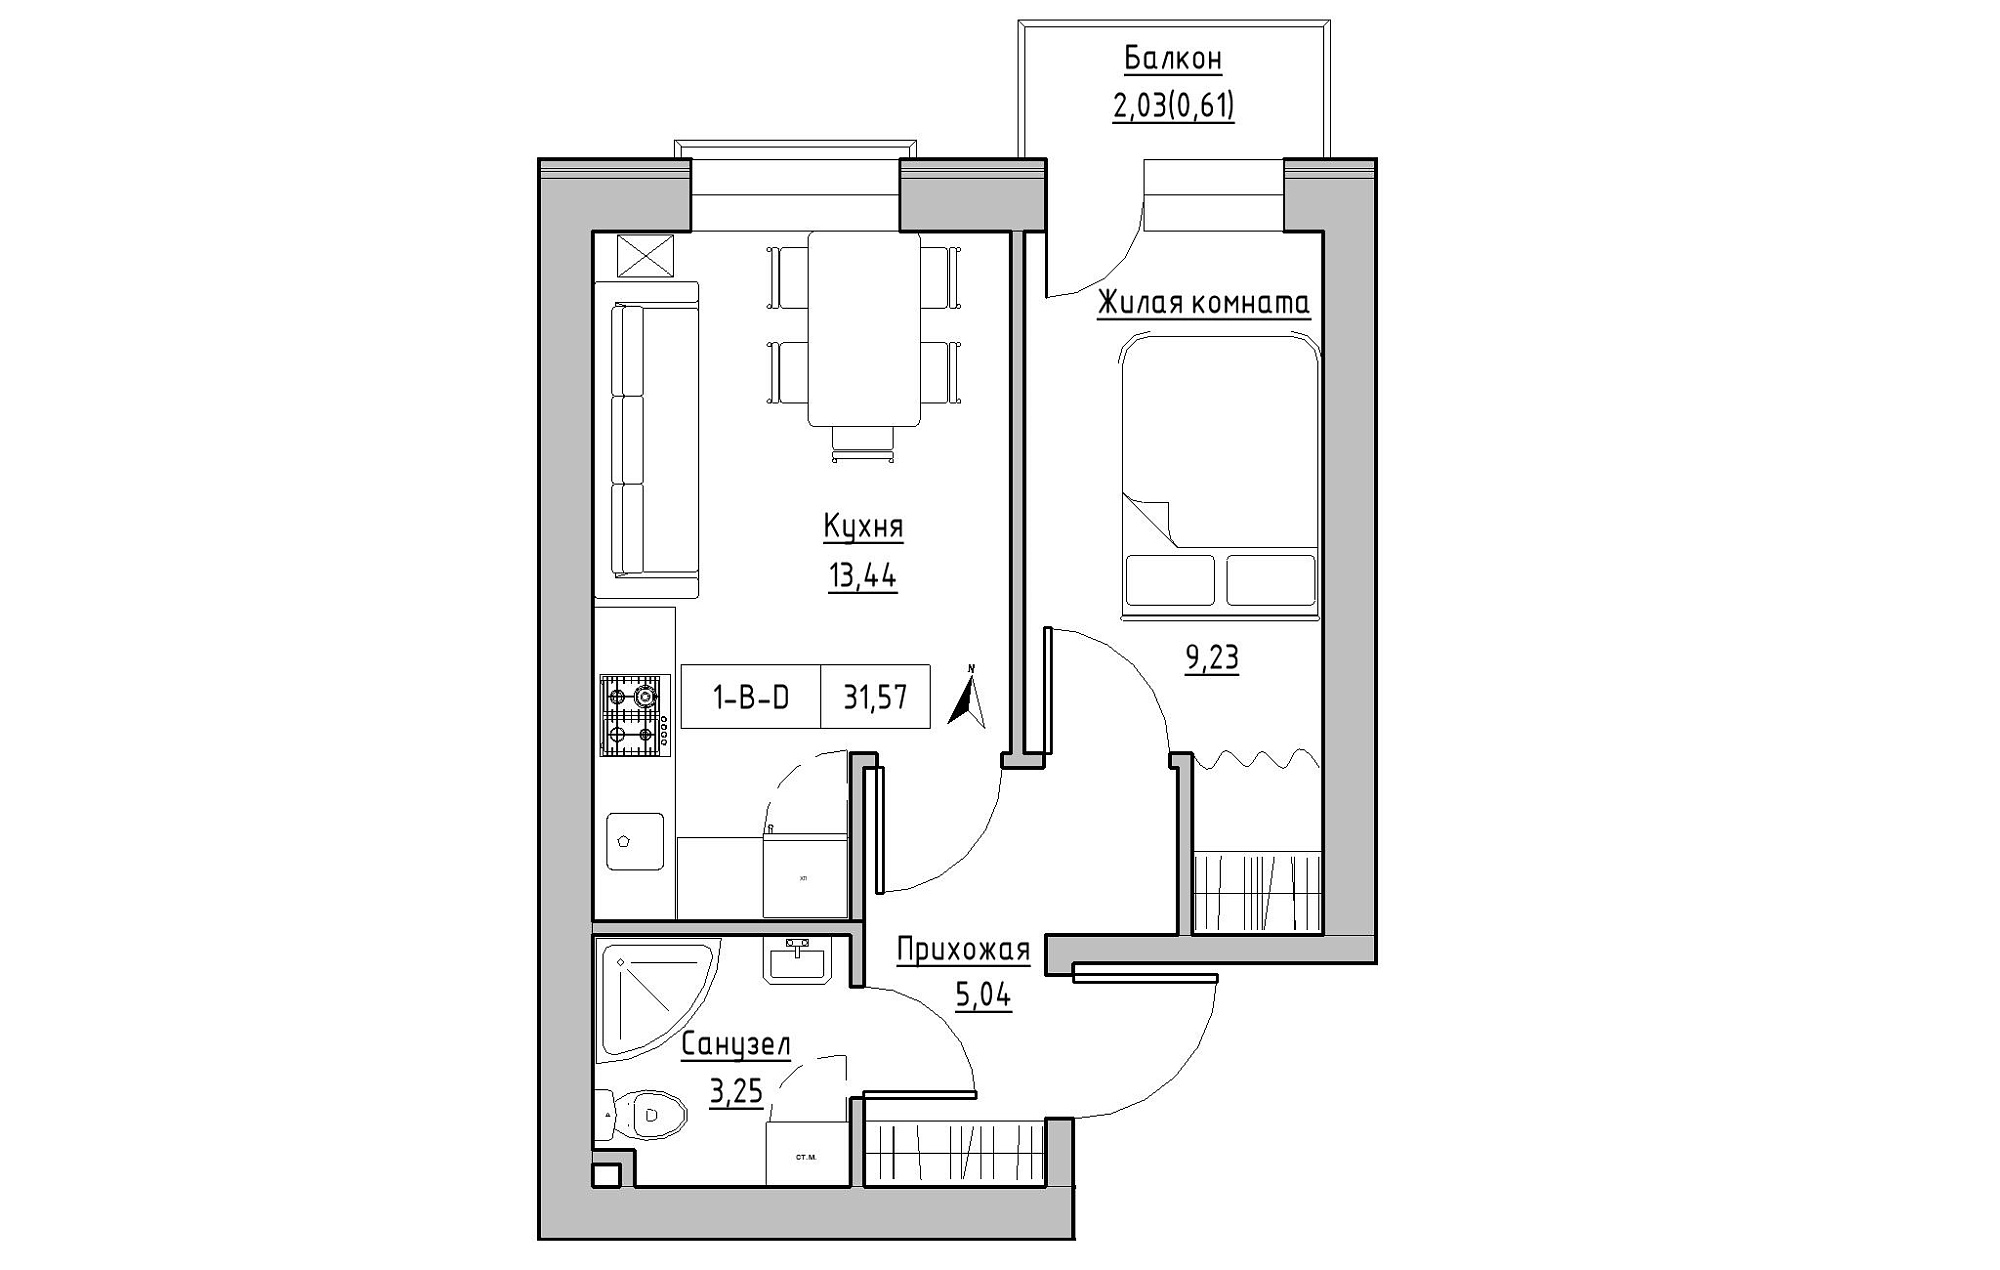 Планировка 1-к квартира площей 31.57м2, KS-019-04/0013.